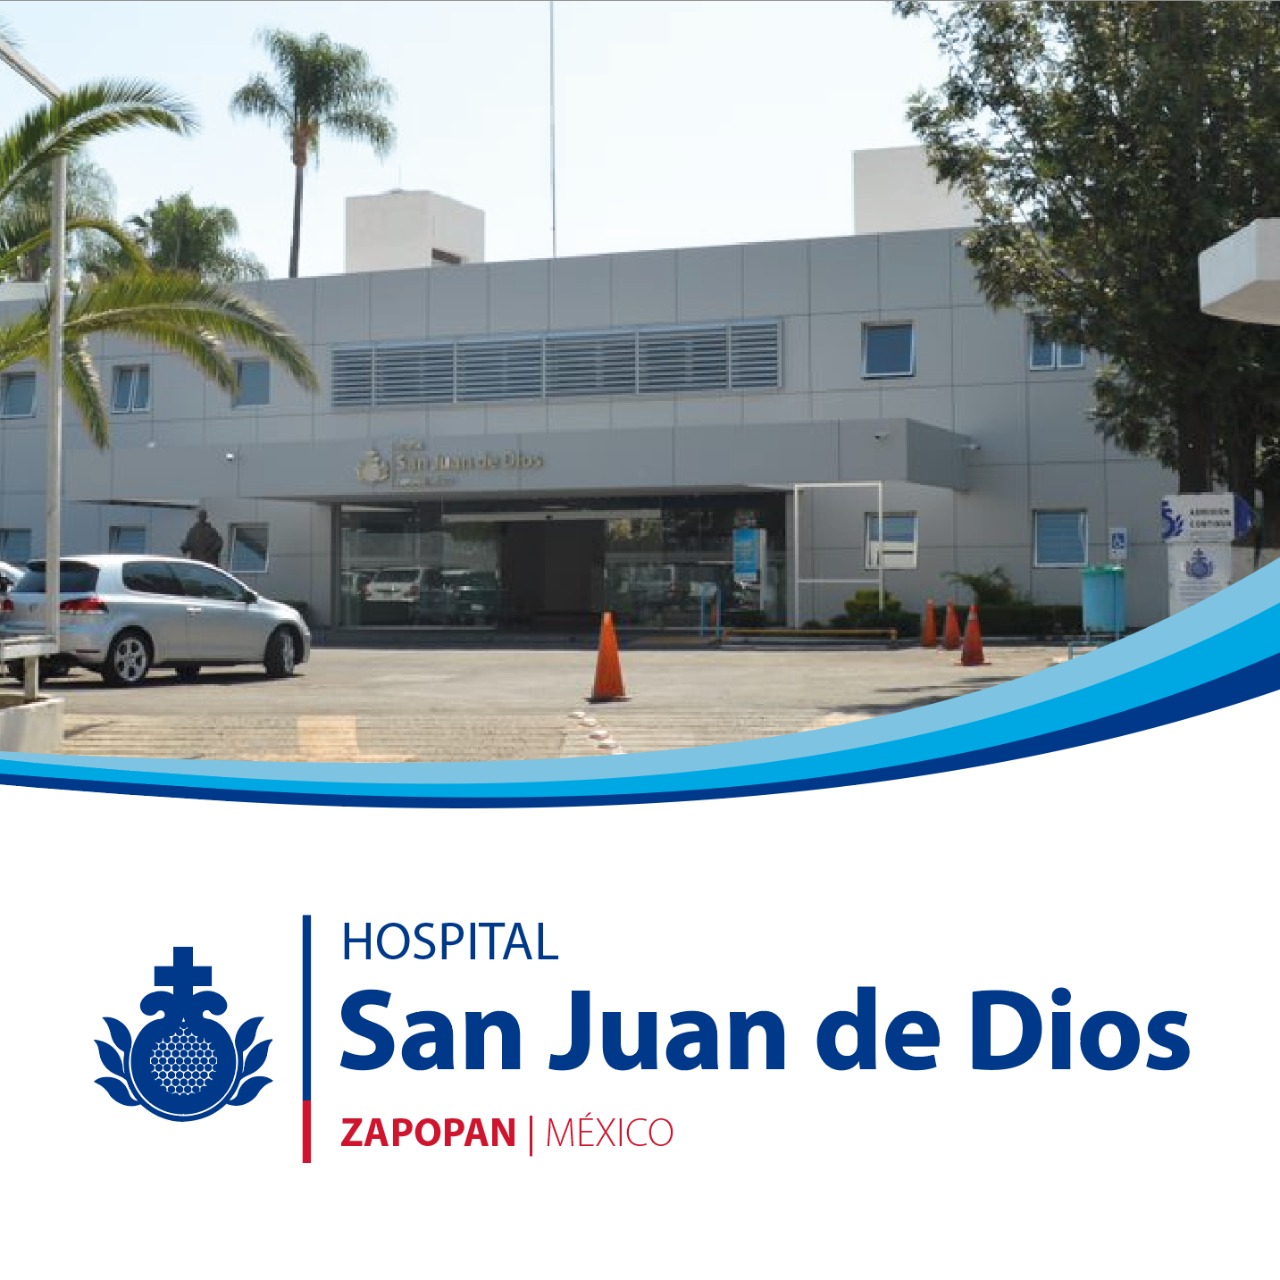 Centro Mexico Hospital San Juan de Dios | Orden Hospitalaria San Juan de Dios